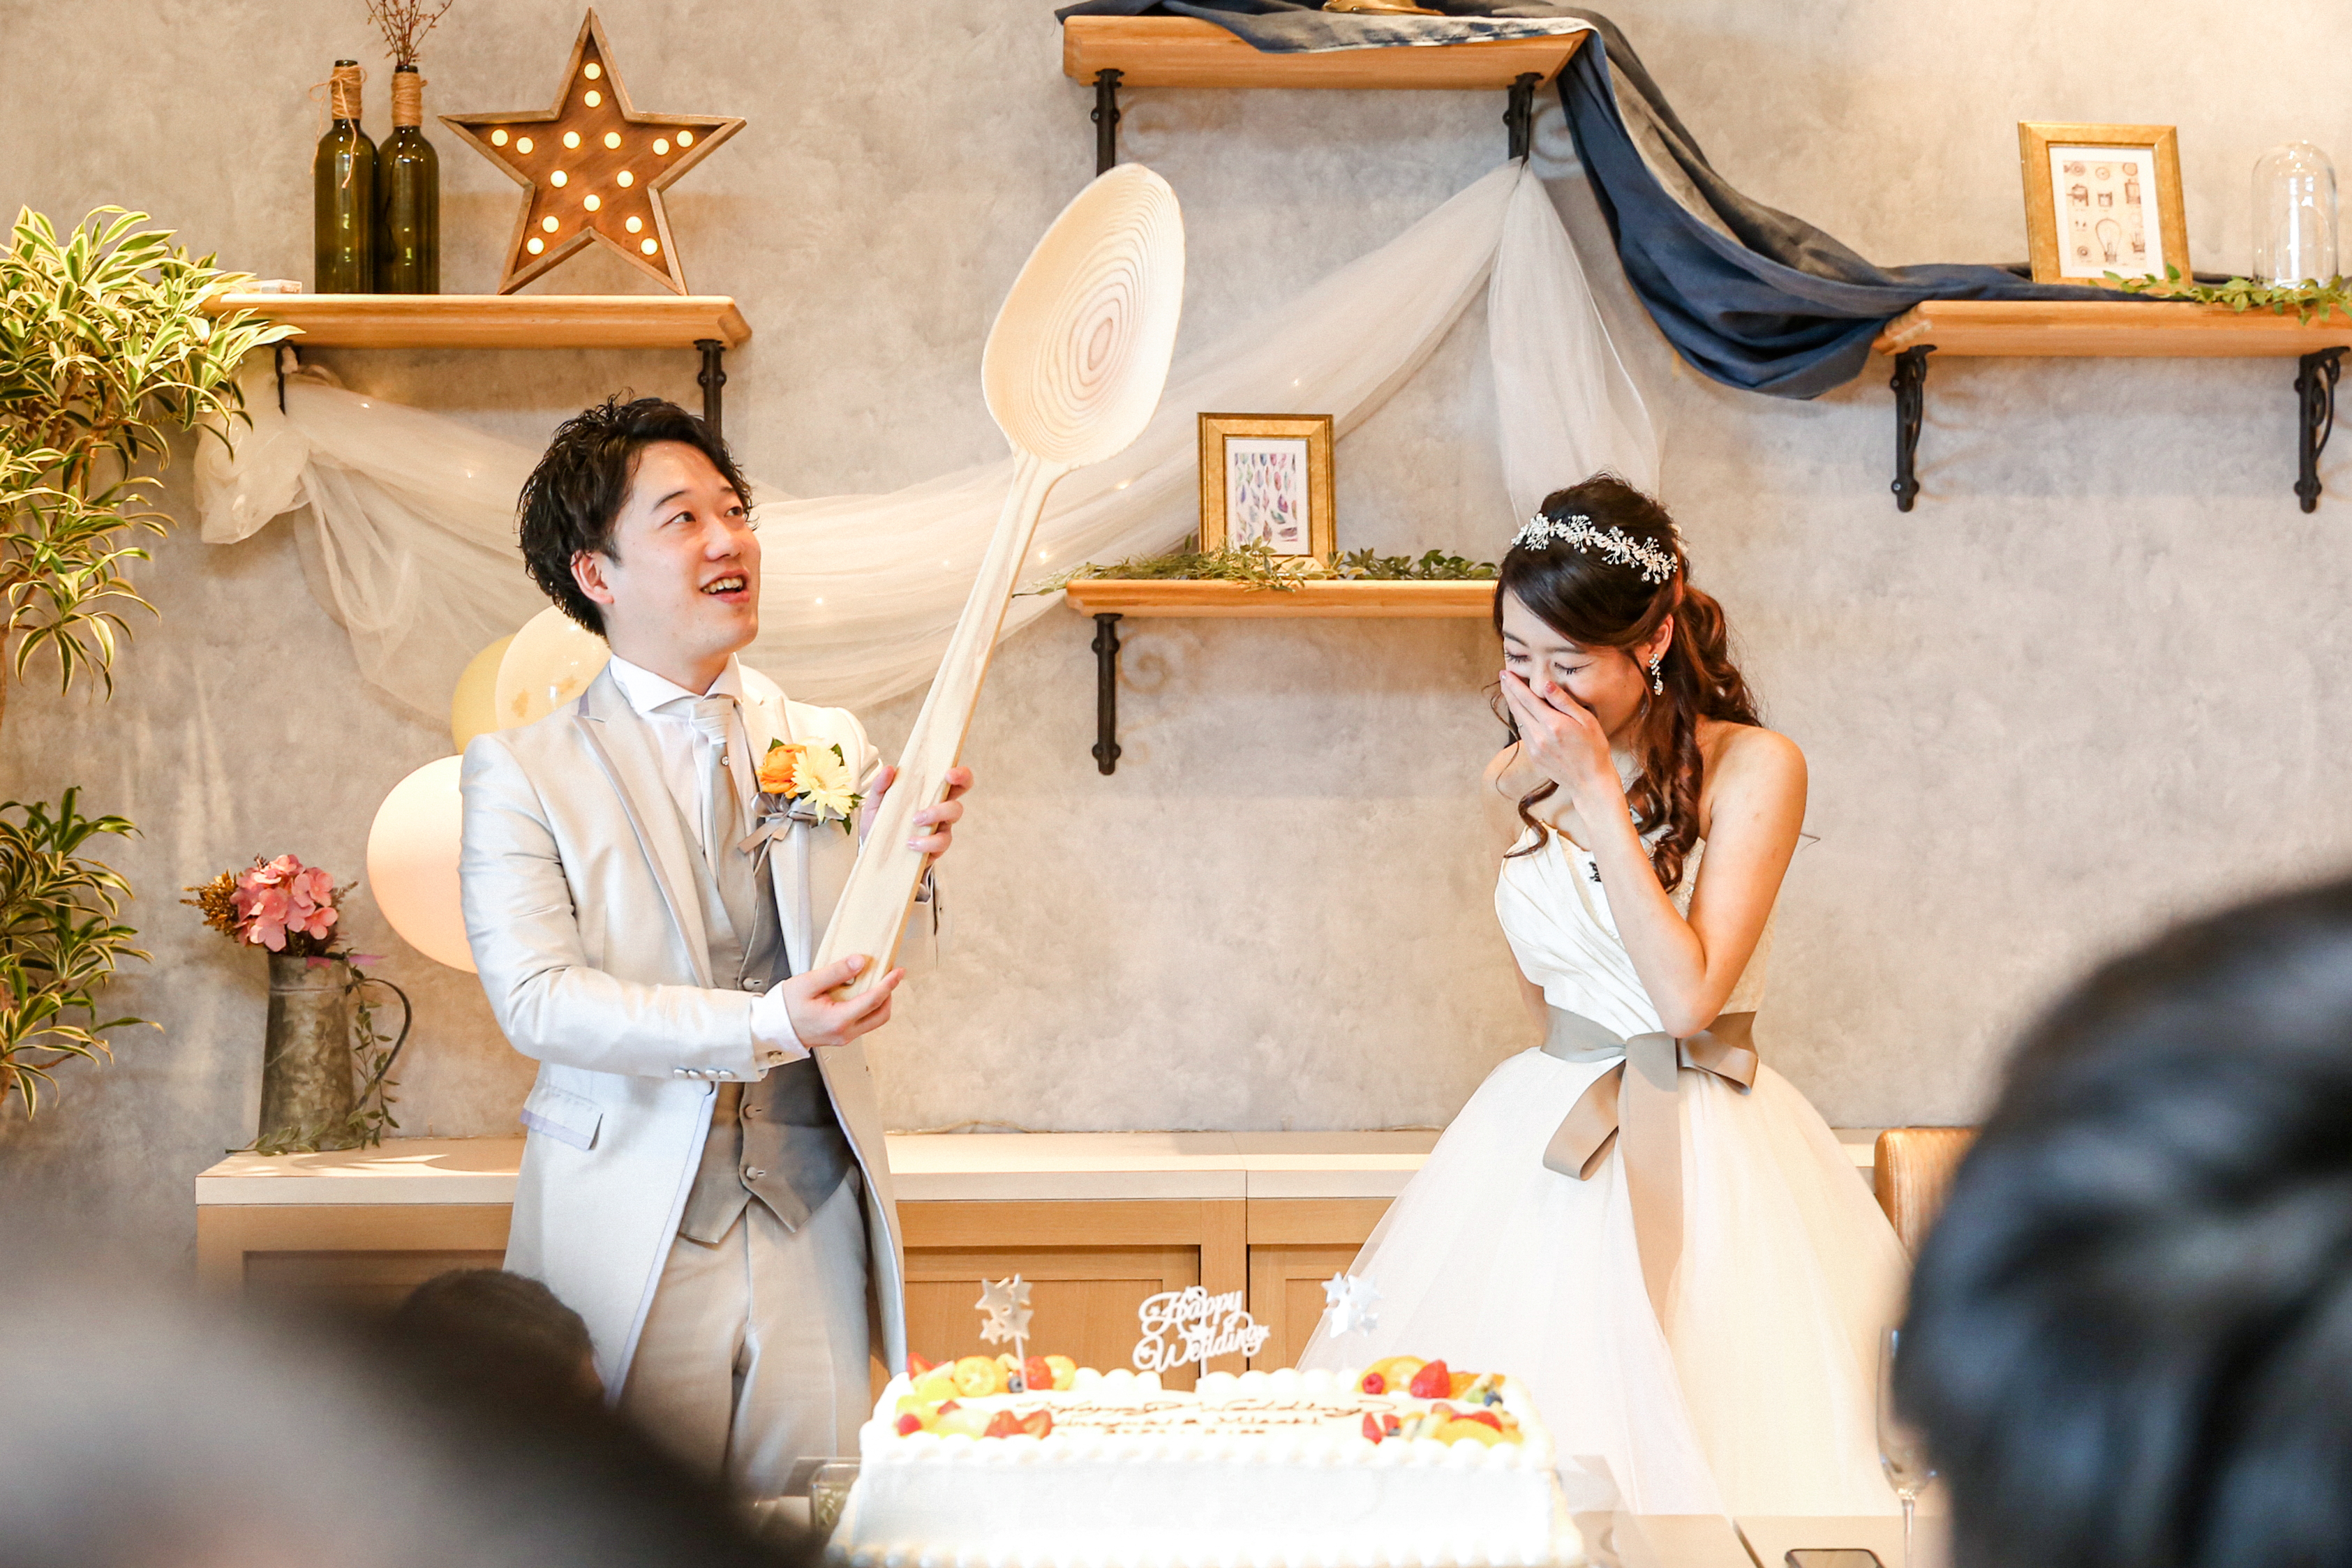 結婚式のウェディングケーキ演出 ファーストバイトの豆知識や 幸せの足跡 について 結婚式写真 前撮り コマーシャルフォト ムービーなら神奈川県横浜市のインプルーブ